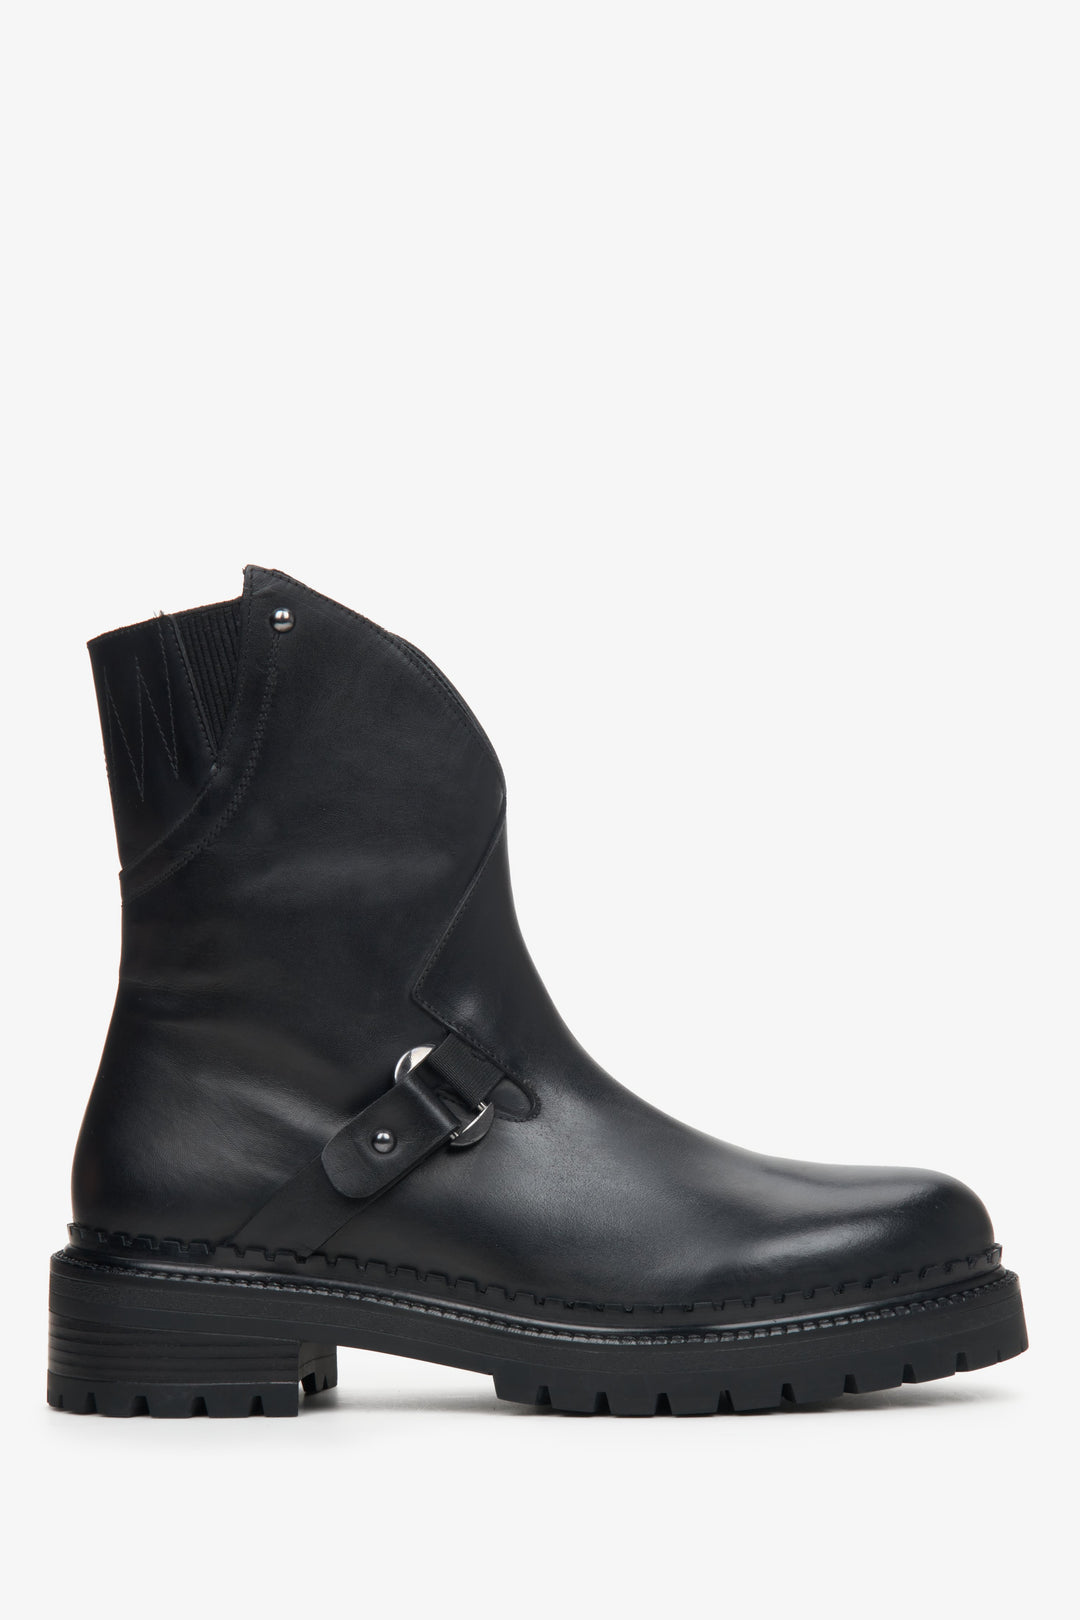 Women's black ankle boots Estro - shoe profile.